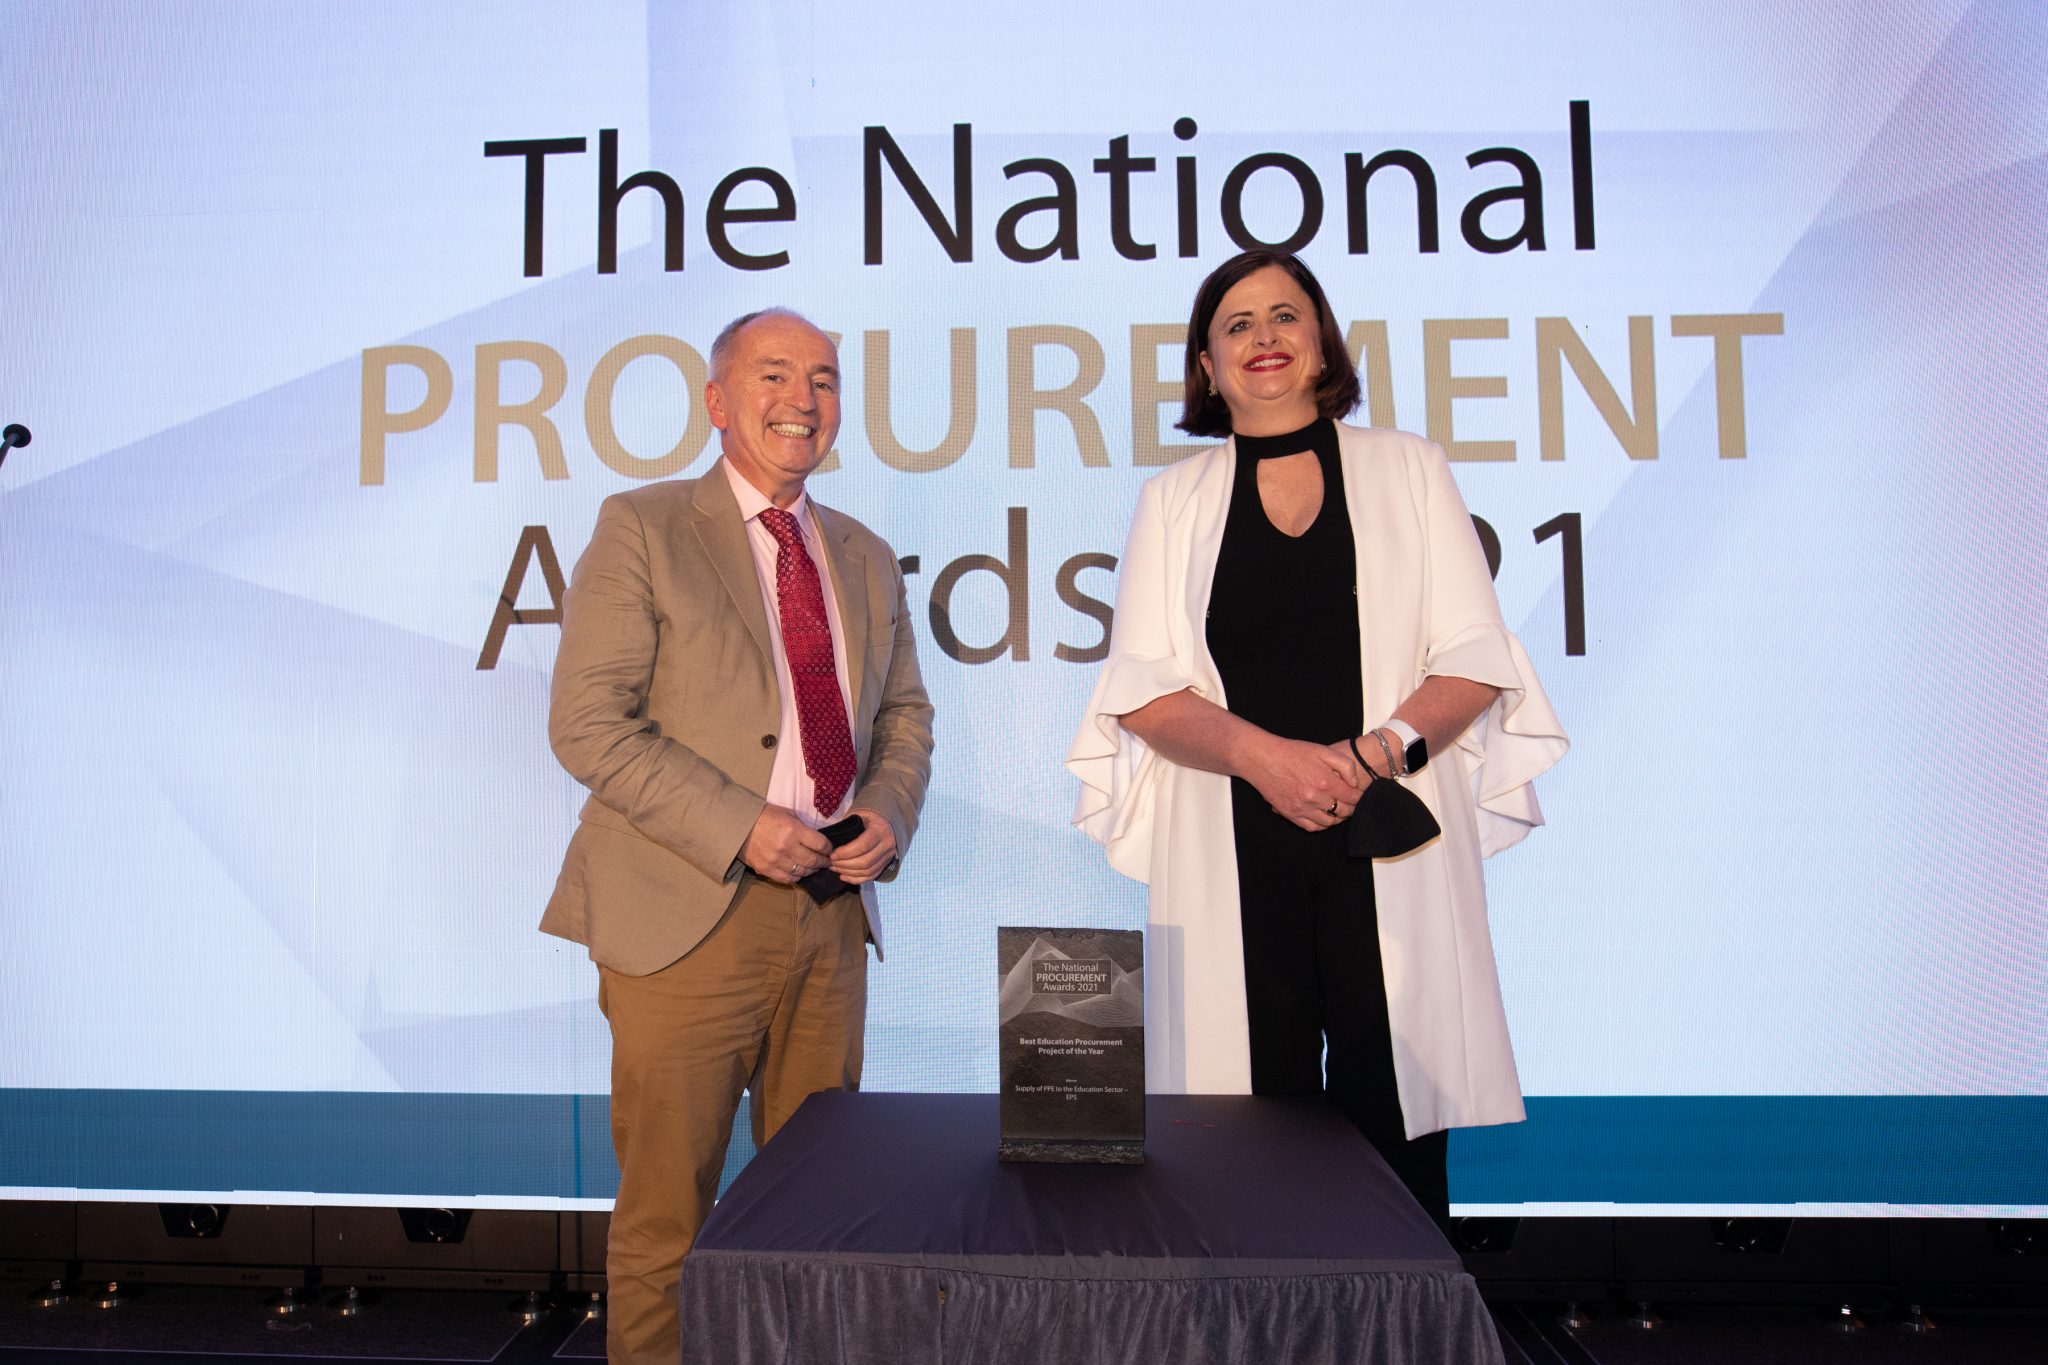 National Procurement Awards 2021 Eps Education Procurement Service 8100